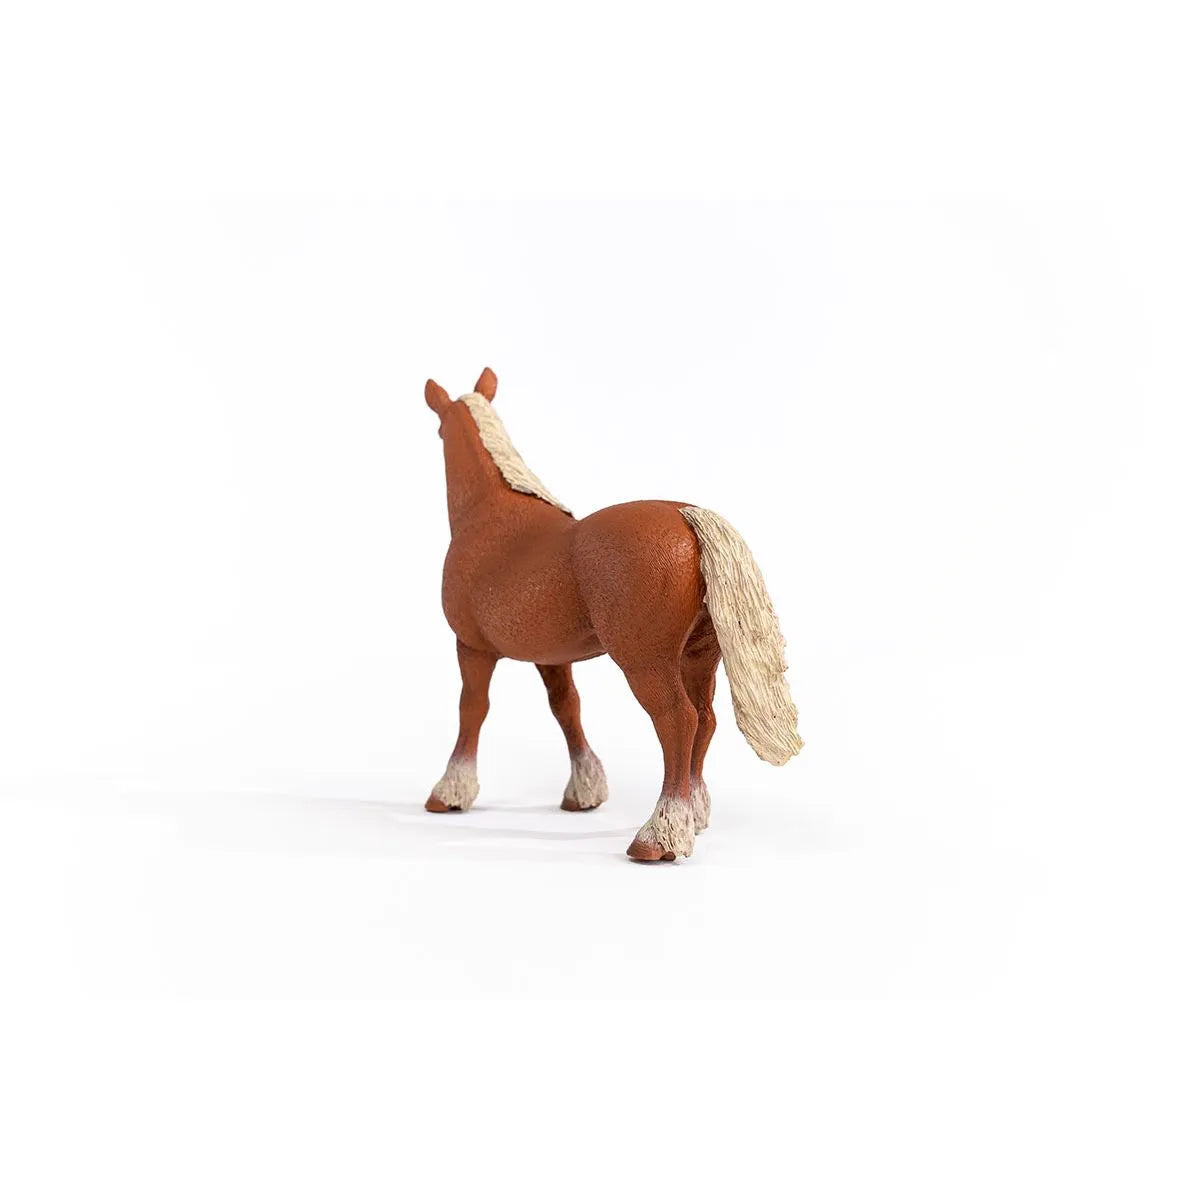 Schleich Belgian Broodmare Draft horse 13941 | 30% OFF | Children of the Wild